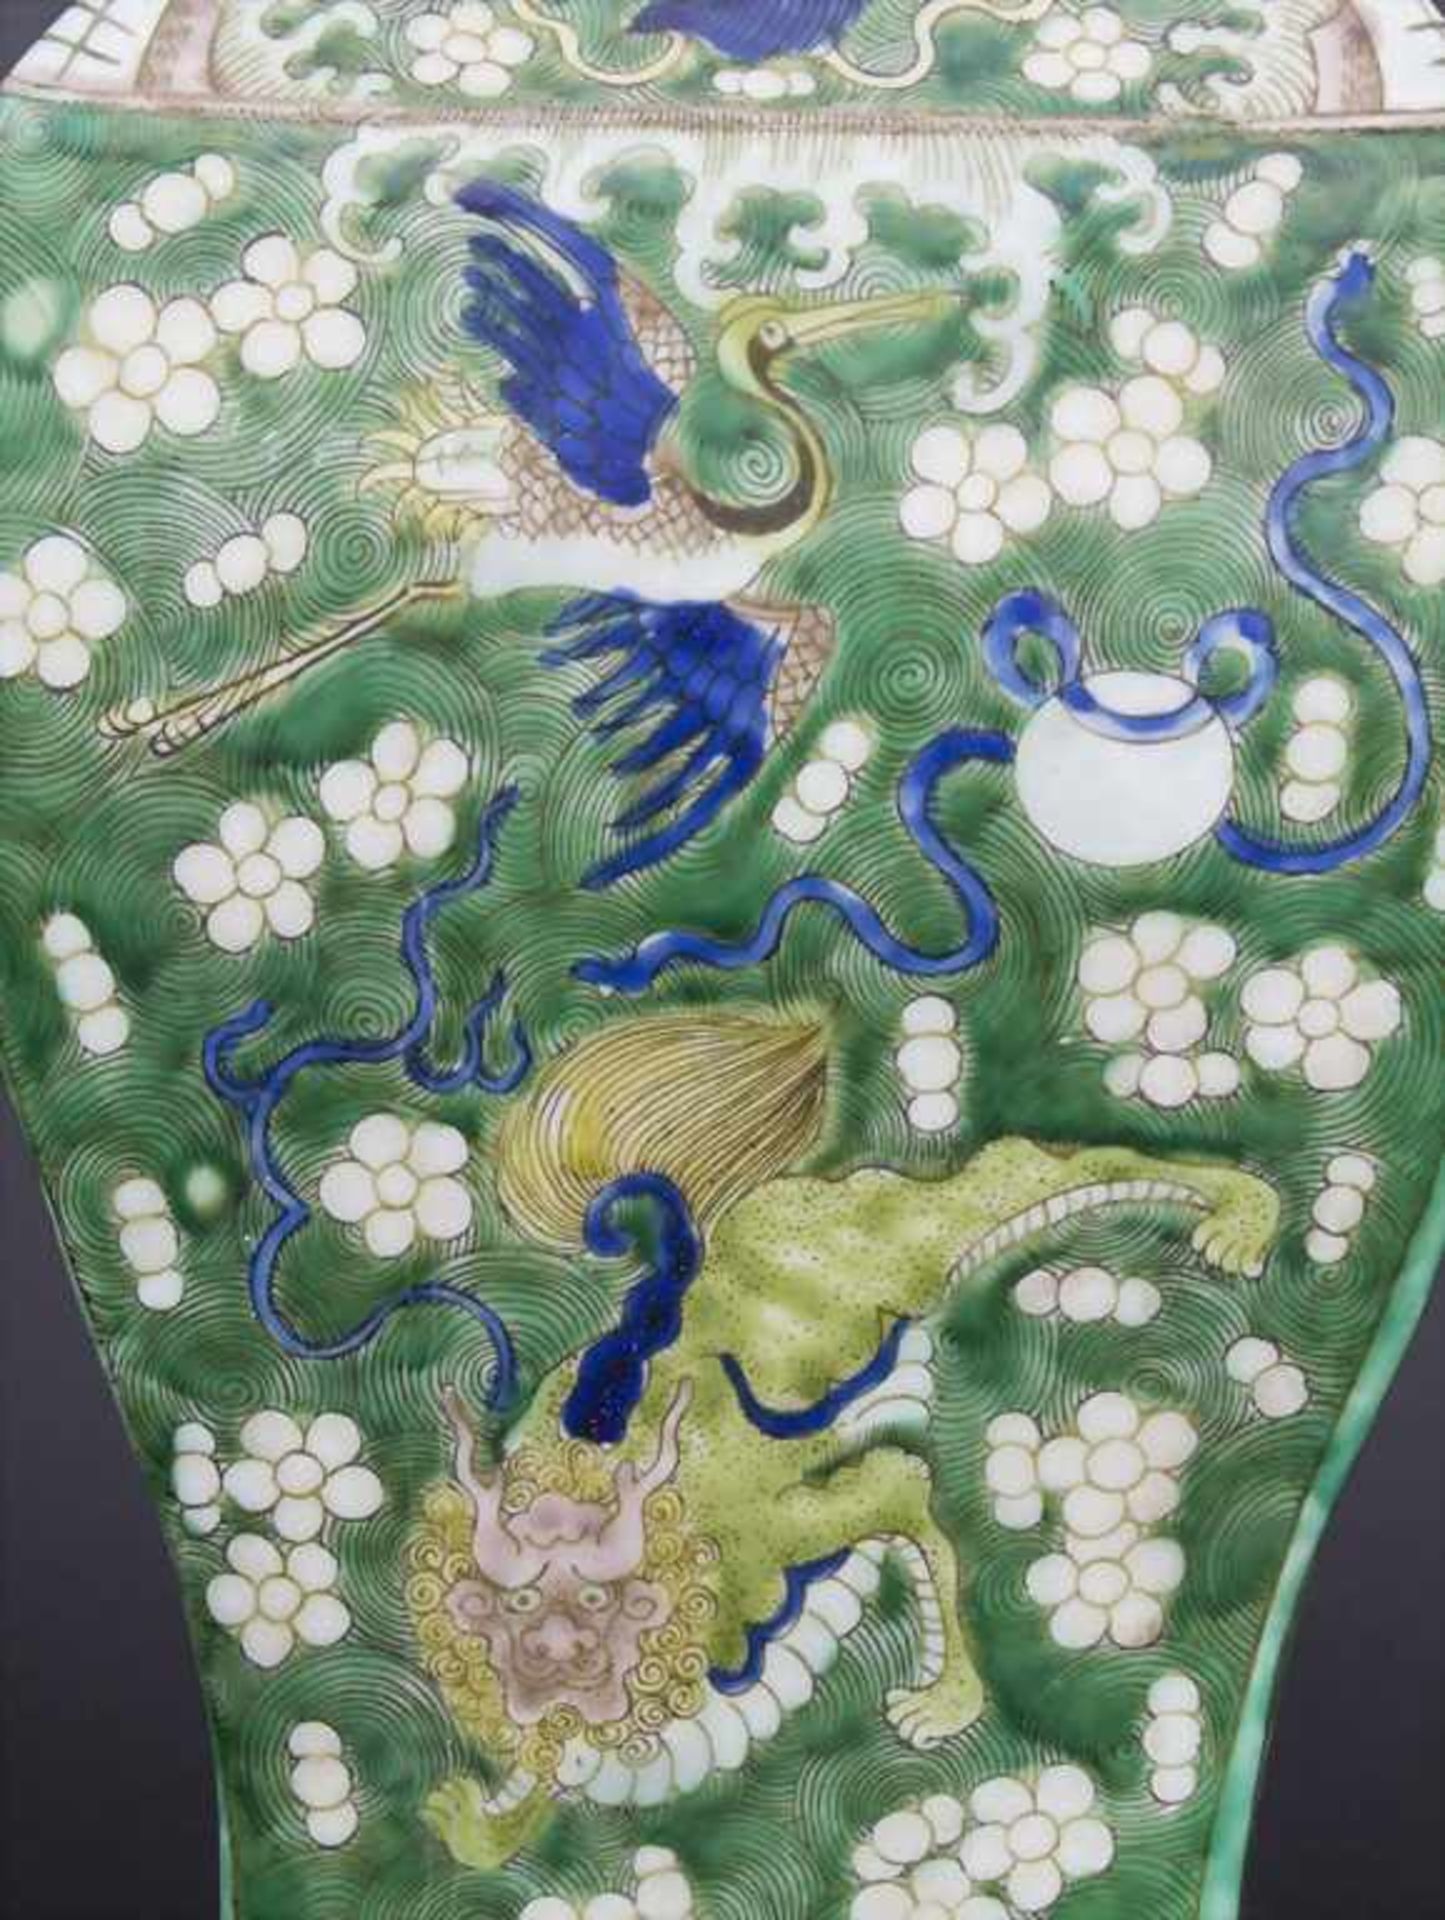 Ziervase, China, späte Qing-Dynastie, 19./20. Jh.Material: Porzellan, polychrom bemalt,Marke/ - Bild 17 aus 17